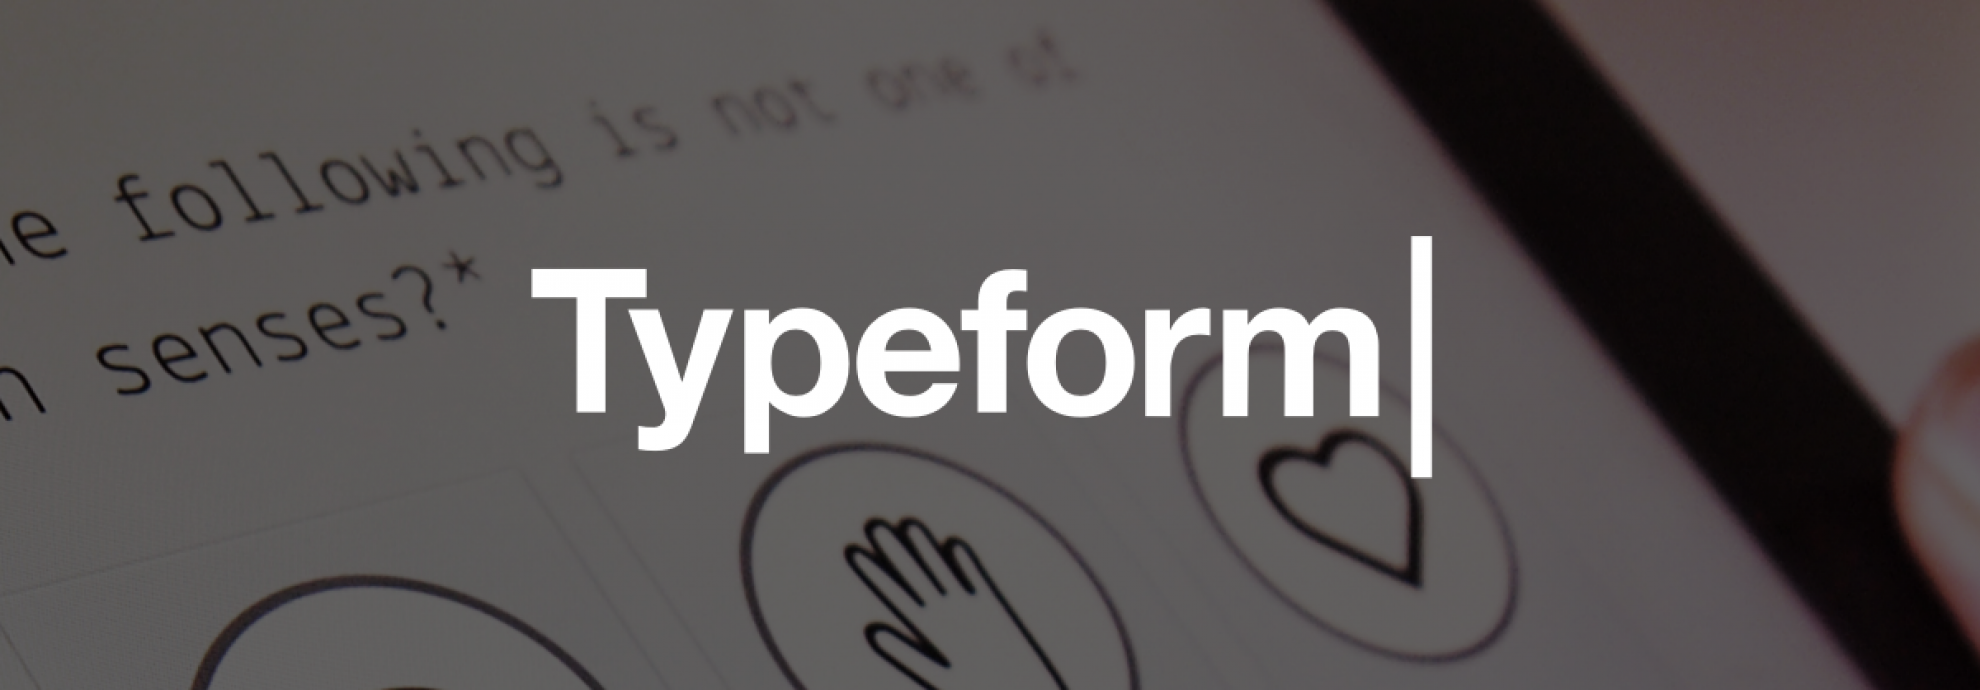 Test di user experience con utenti online: typeform